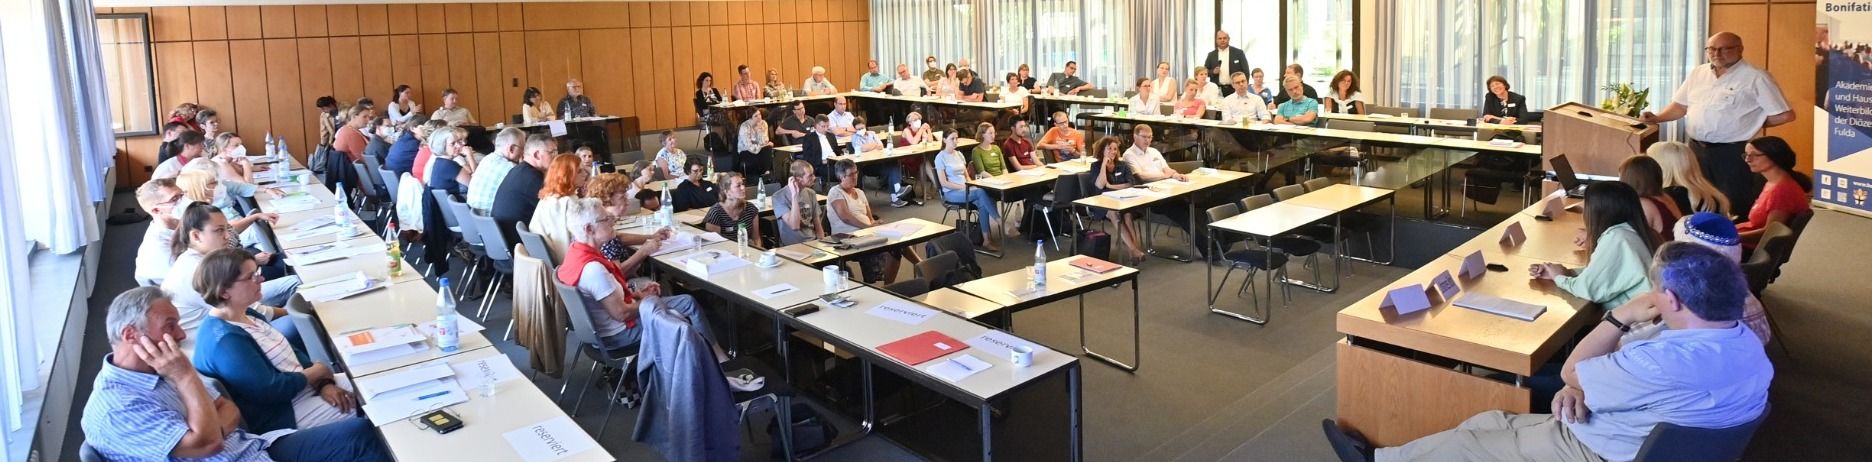 Religionsunterricht-Tag mit 100 Lehrerinnen und Lehrern aus dem ganzen Bistum Fulda